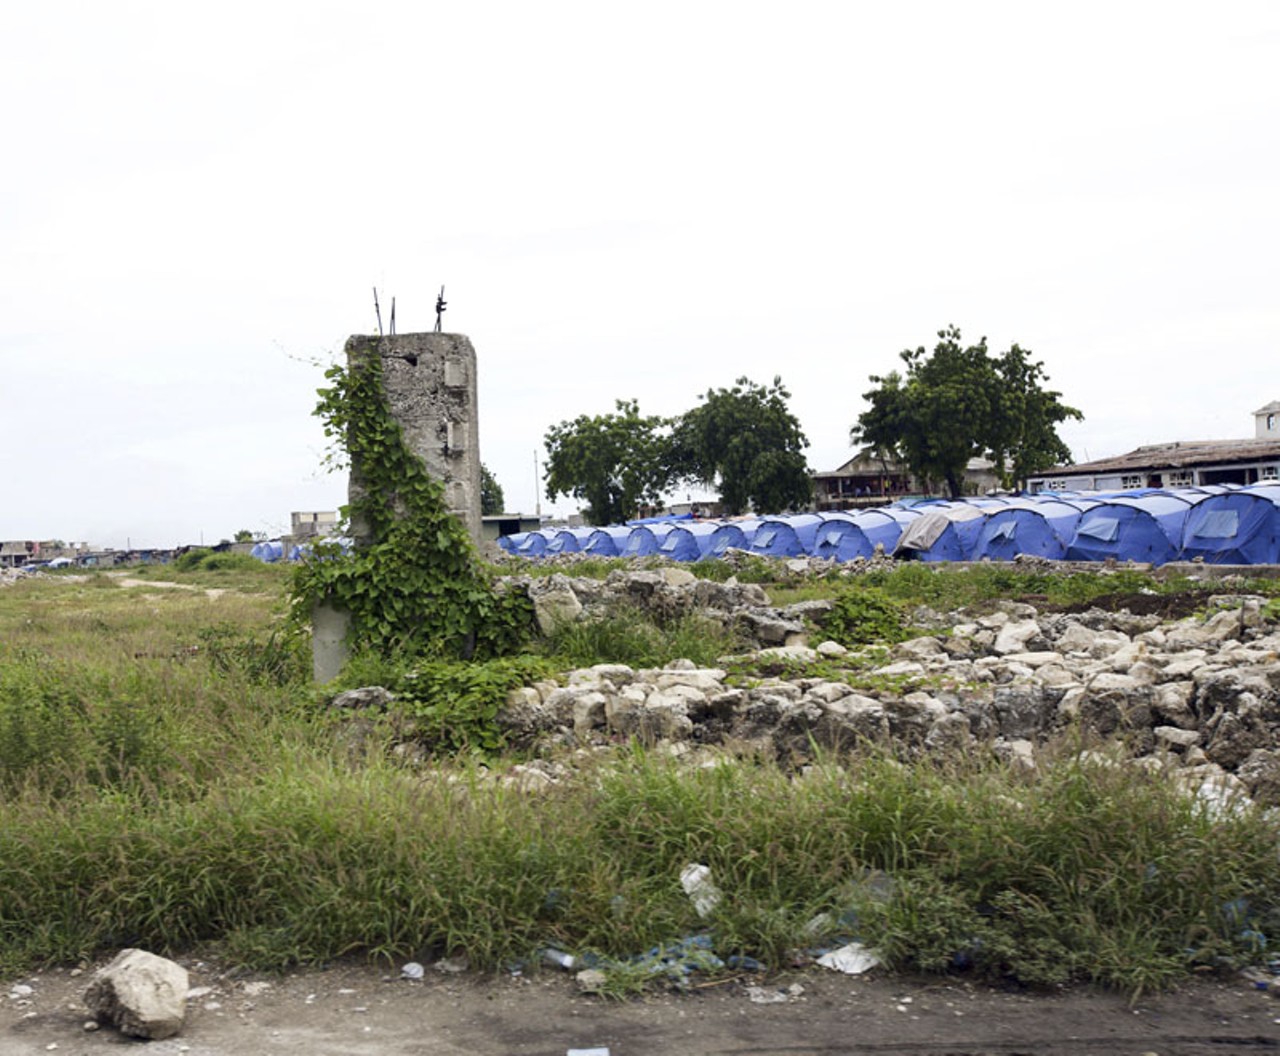 Tent city, Port-au-Prince.